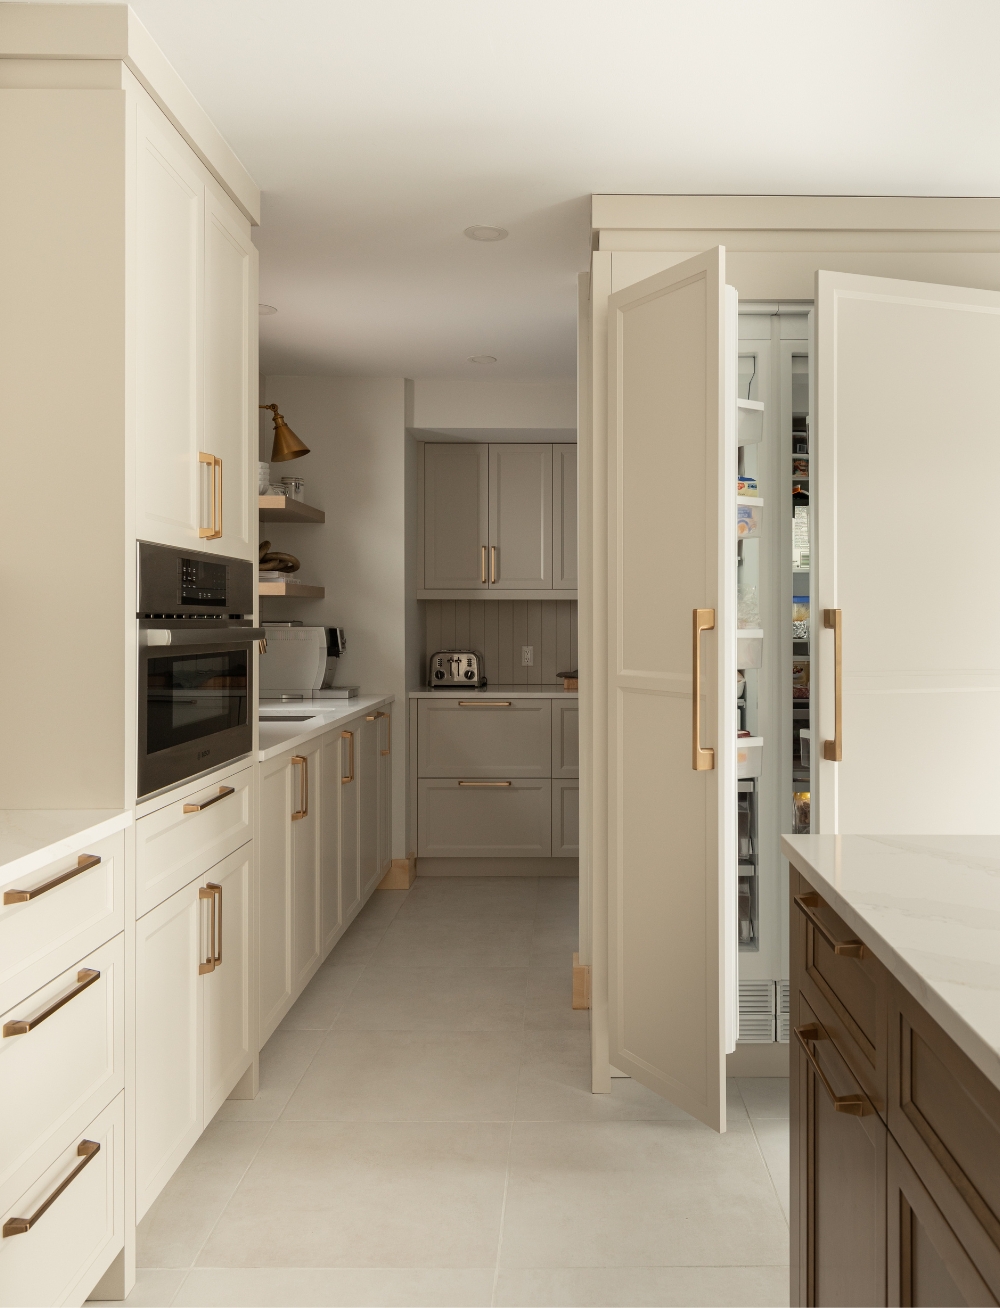 Kitchen with a hidden fridge in cream kitchen cabinet.